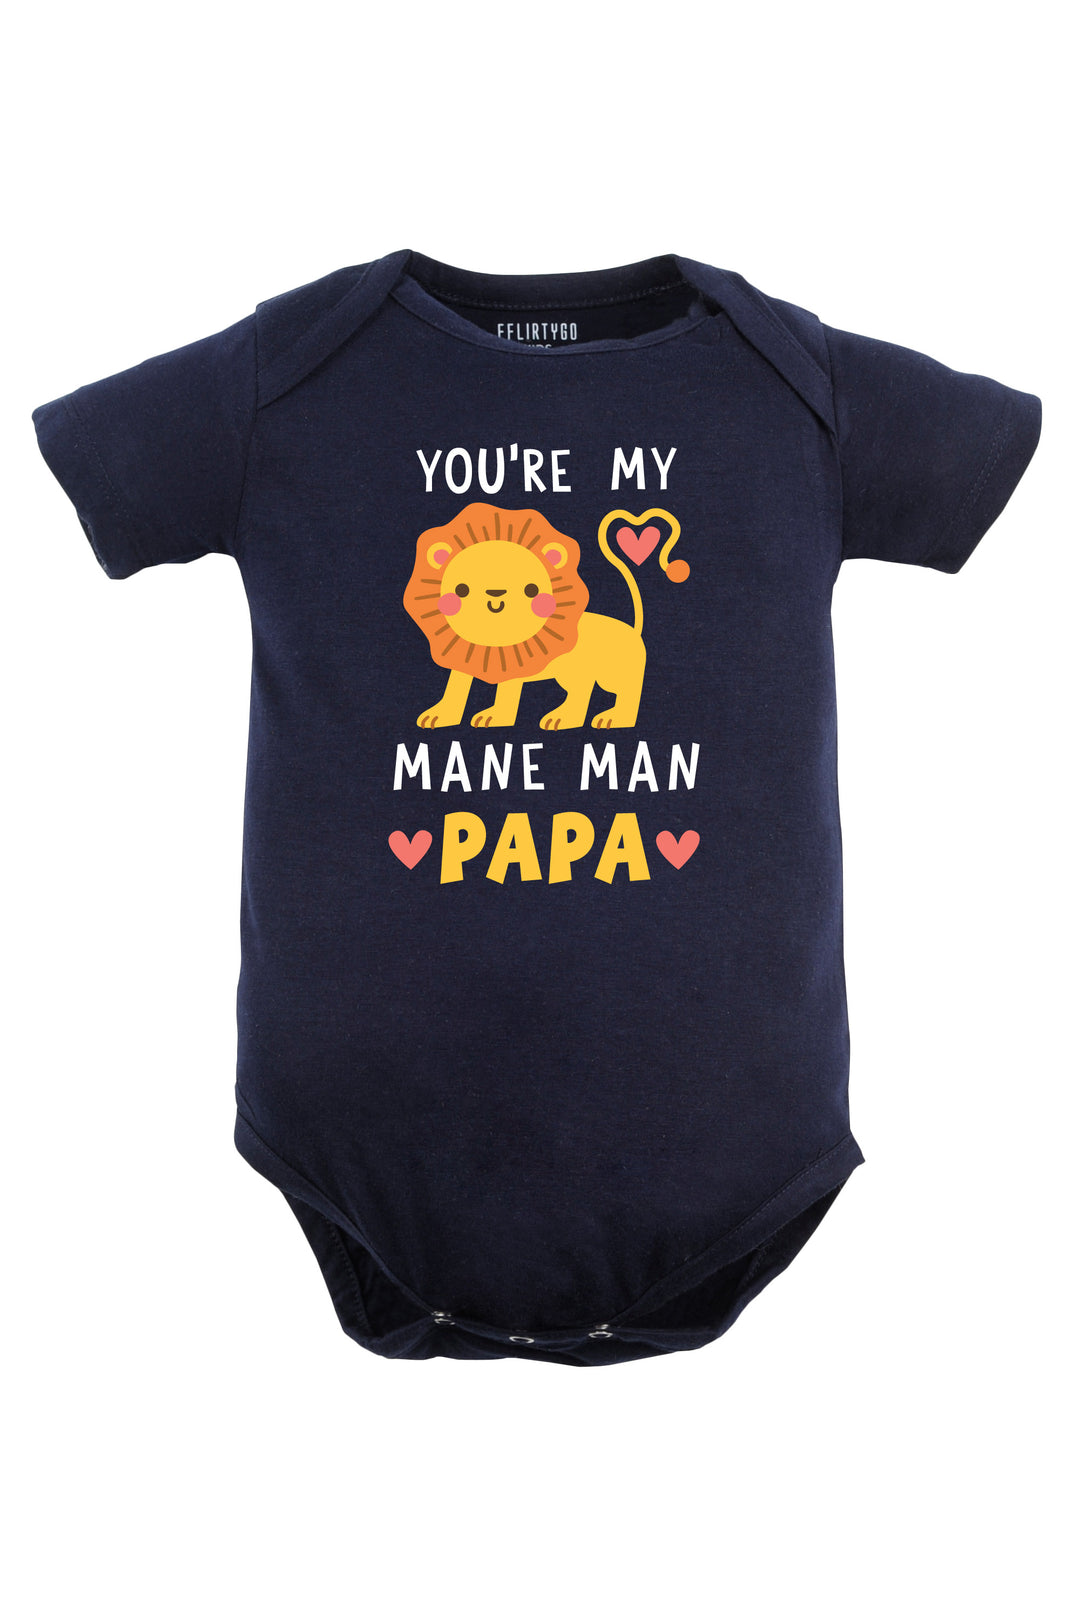 You're My Mane Man Papa Baby Romper | Onesies